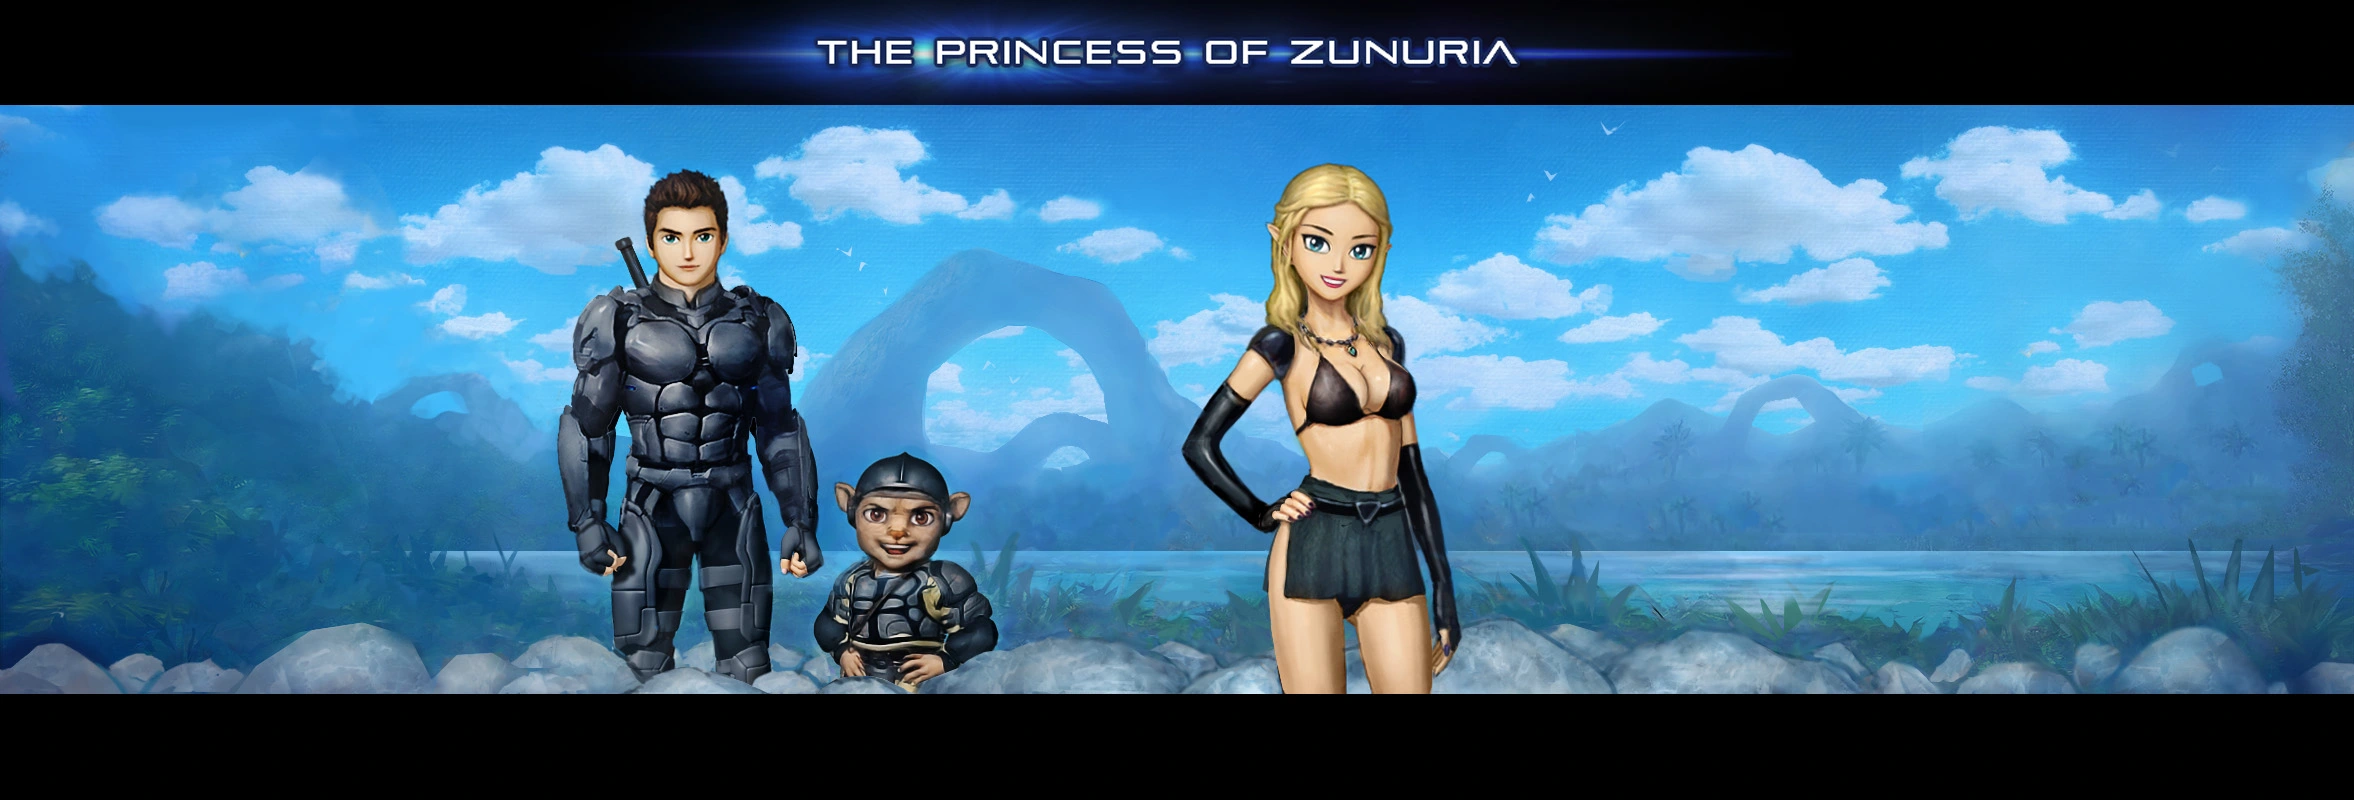 The Princess of Zunuria [v0.14] main image